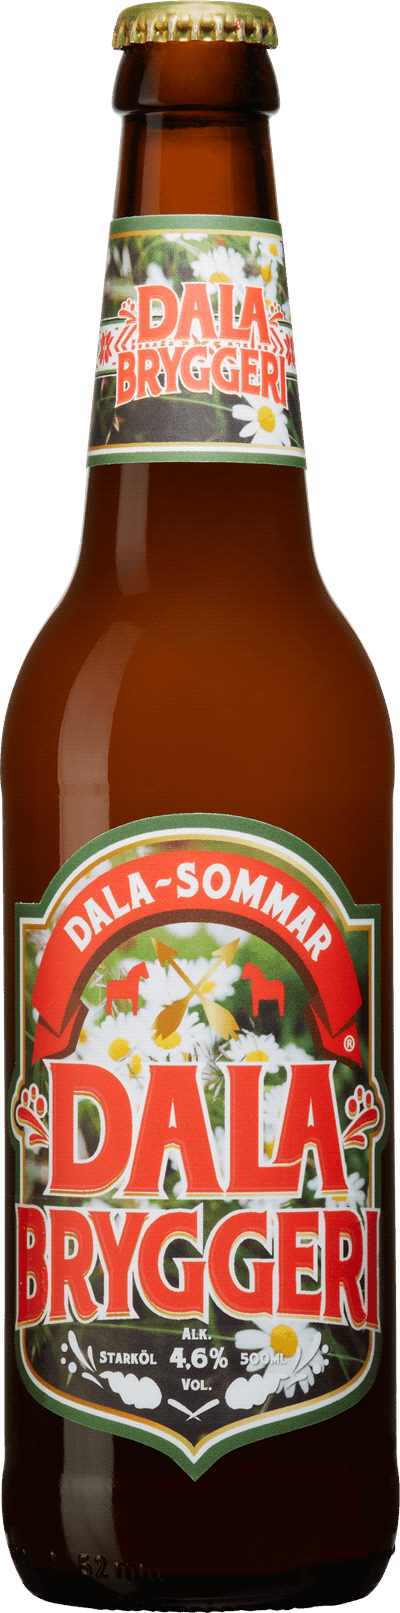 Dalabryggeri Dala-Sommar